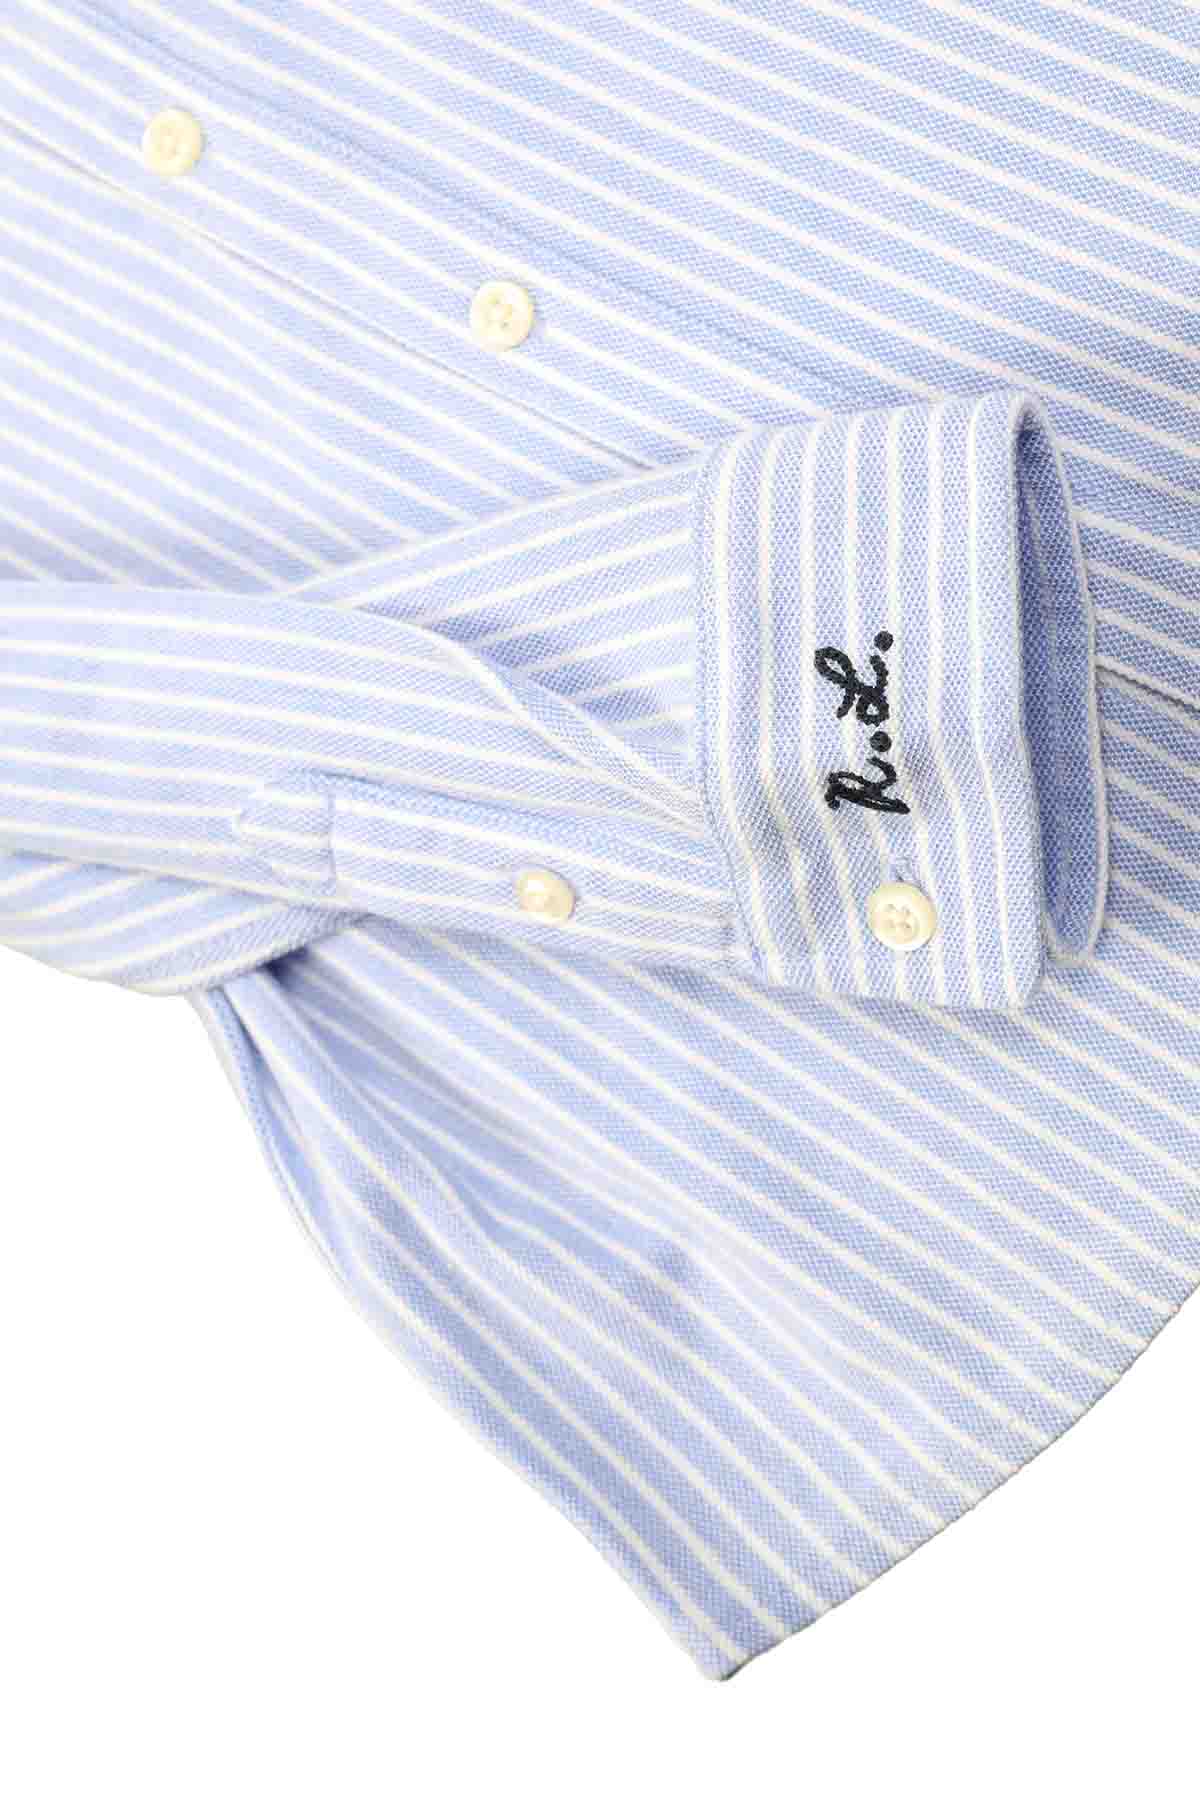 Polo Ralph Lauren 3-4 Yaş Düğmeli Yaka Erkek Gömlek-Libas Trendy Fashion Store